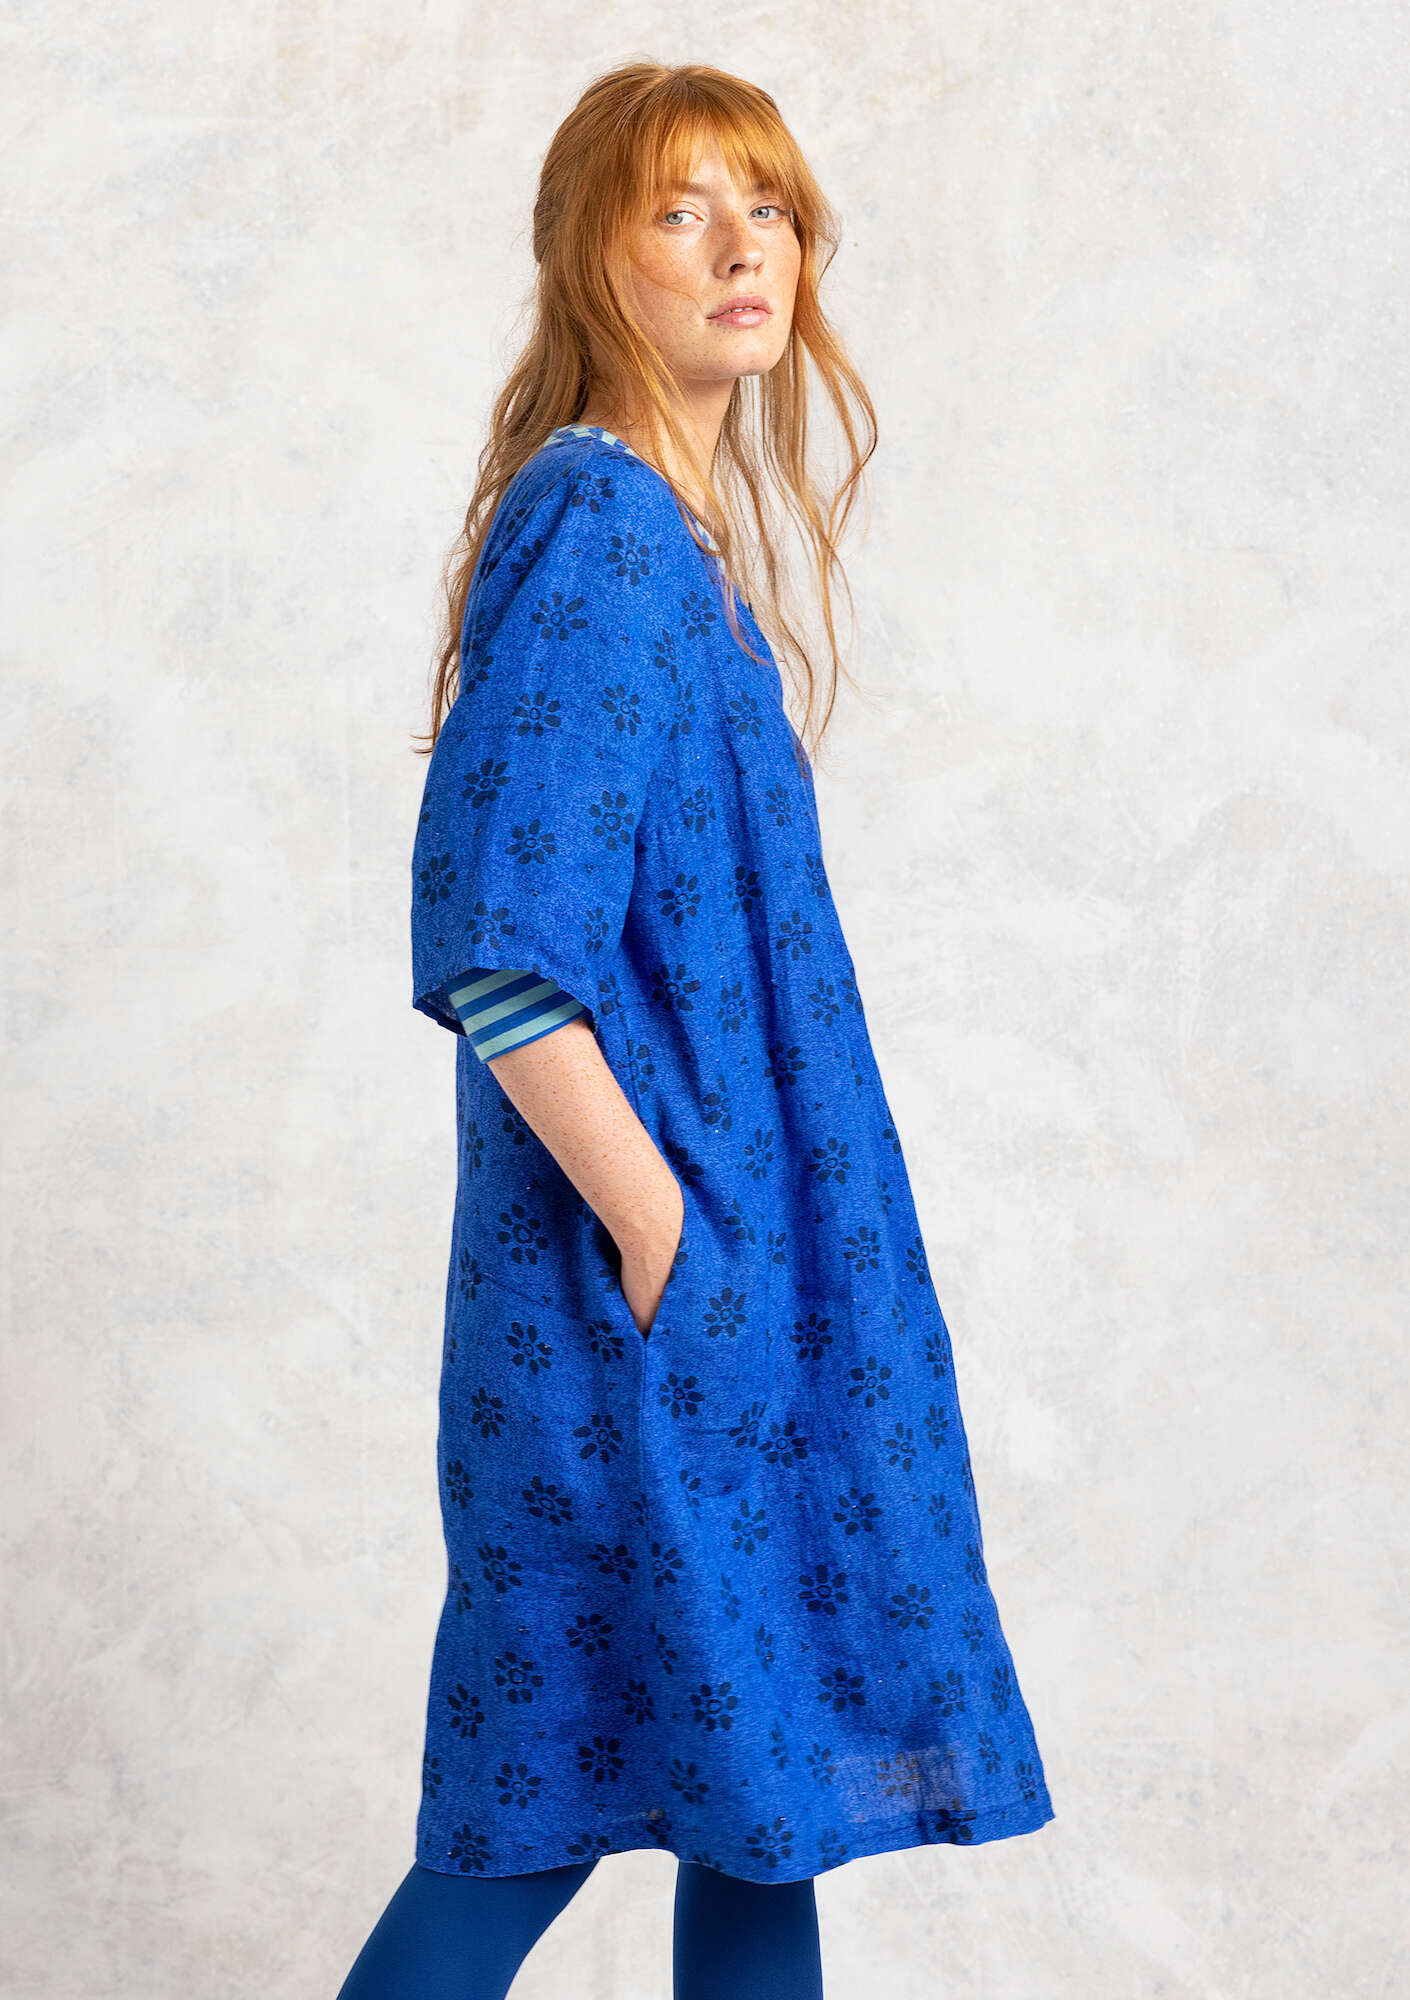 Vävd klänning  Ester  i lin safirblå/mönstrad